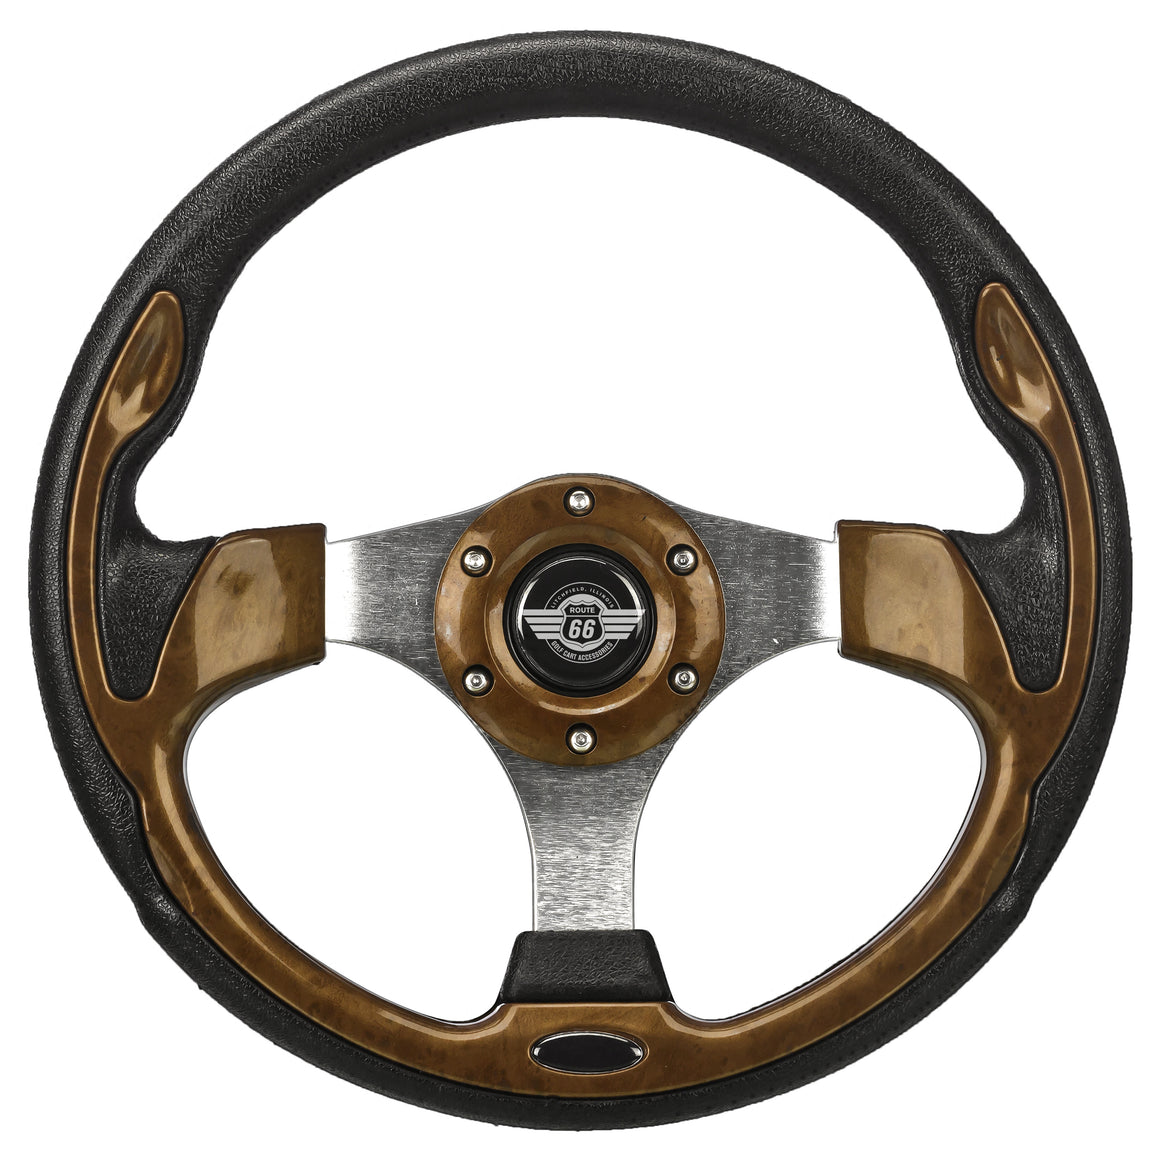 12.5" Wood Grain Steering Wheel for Yamaha